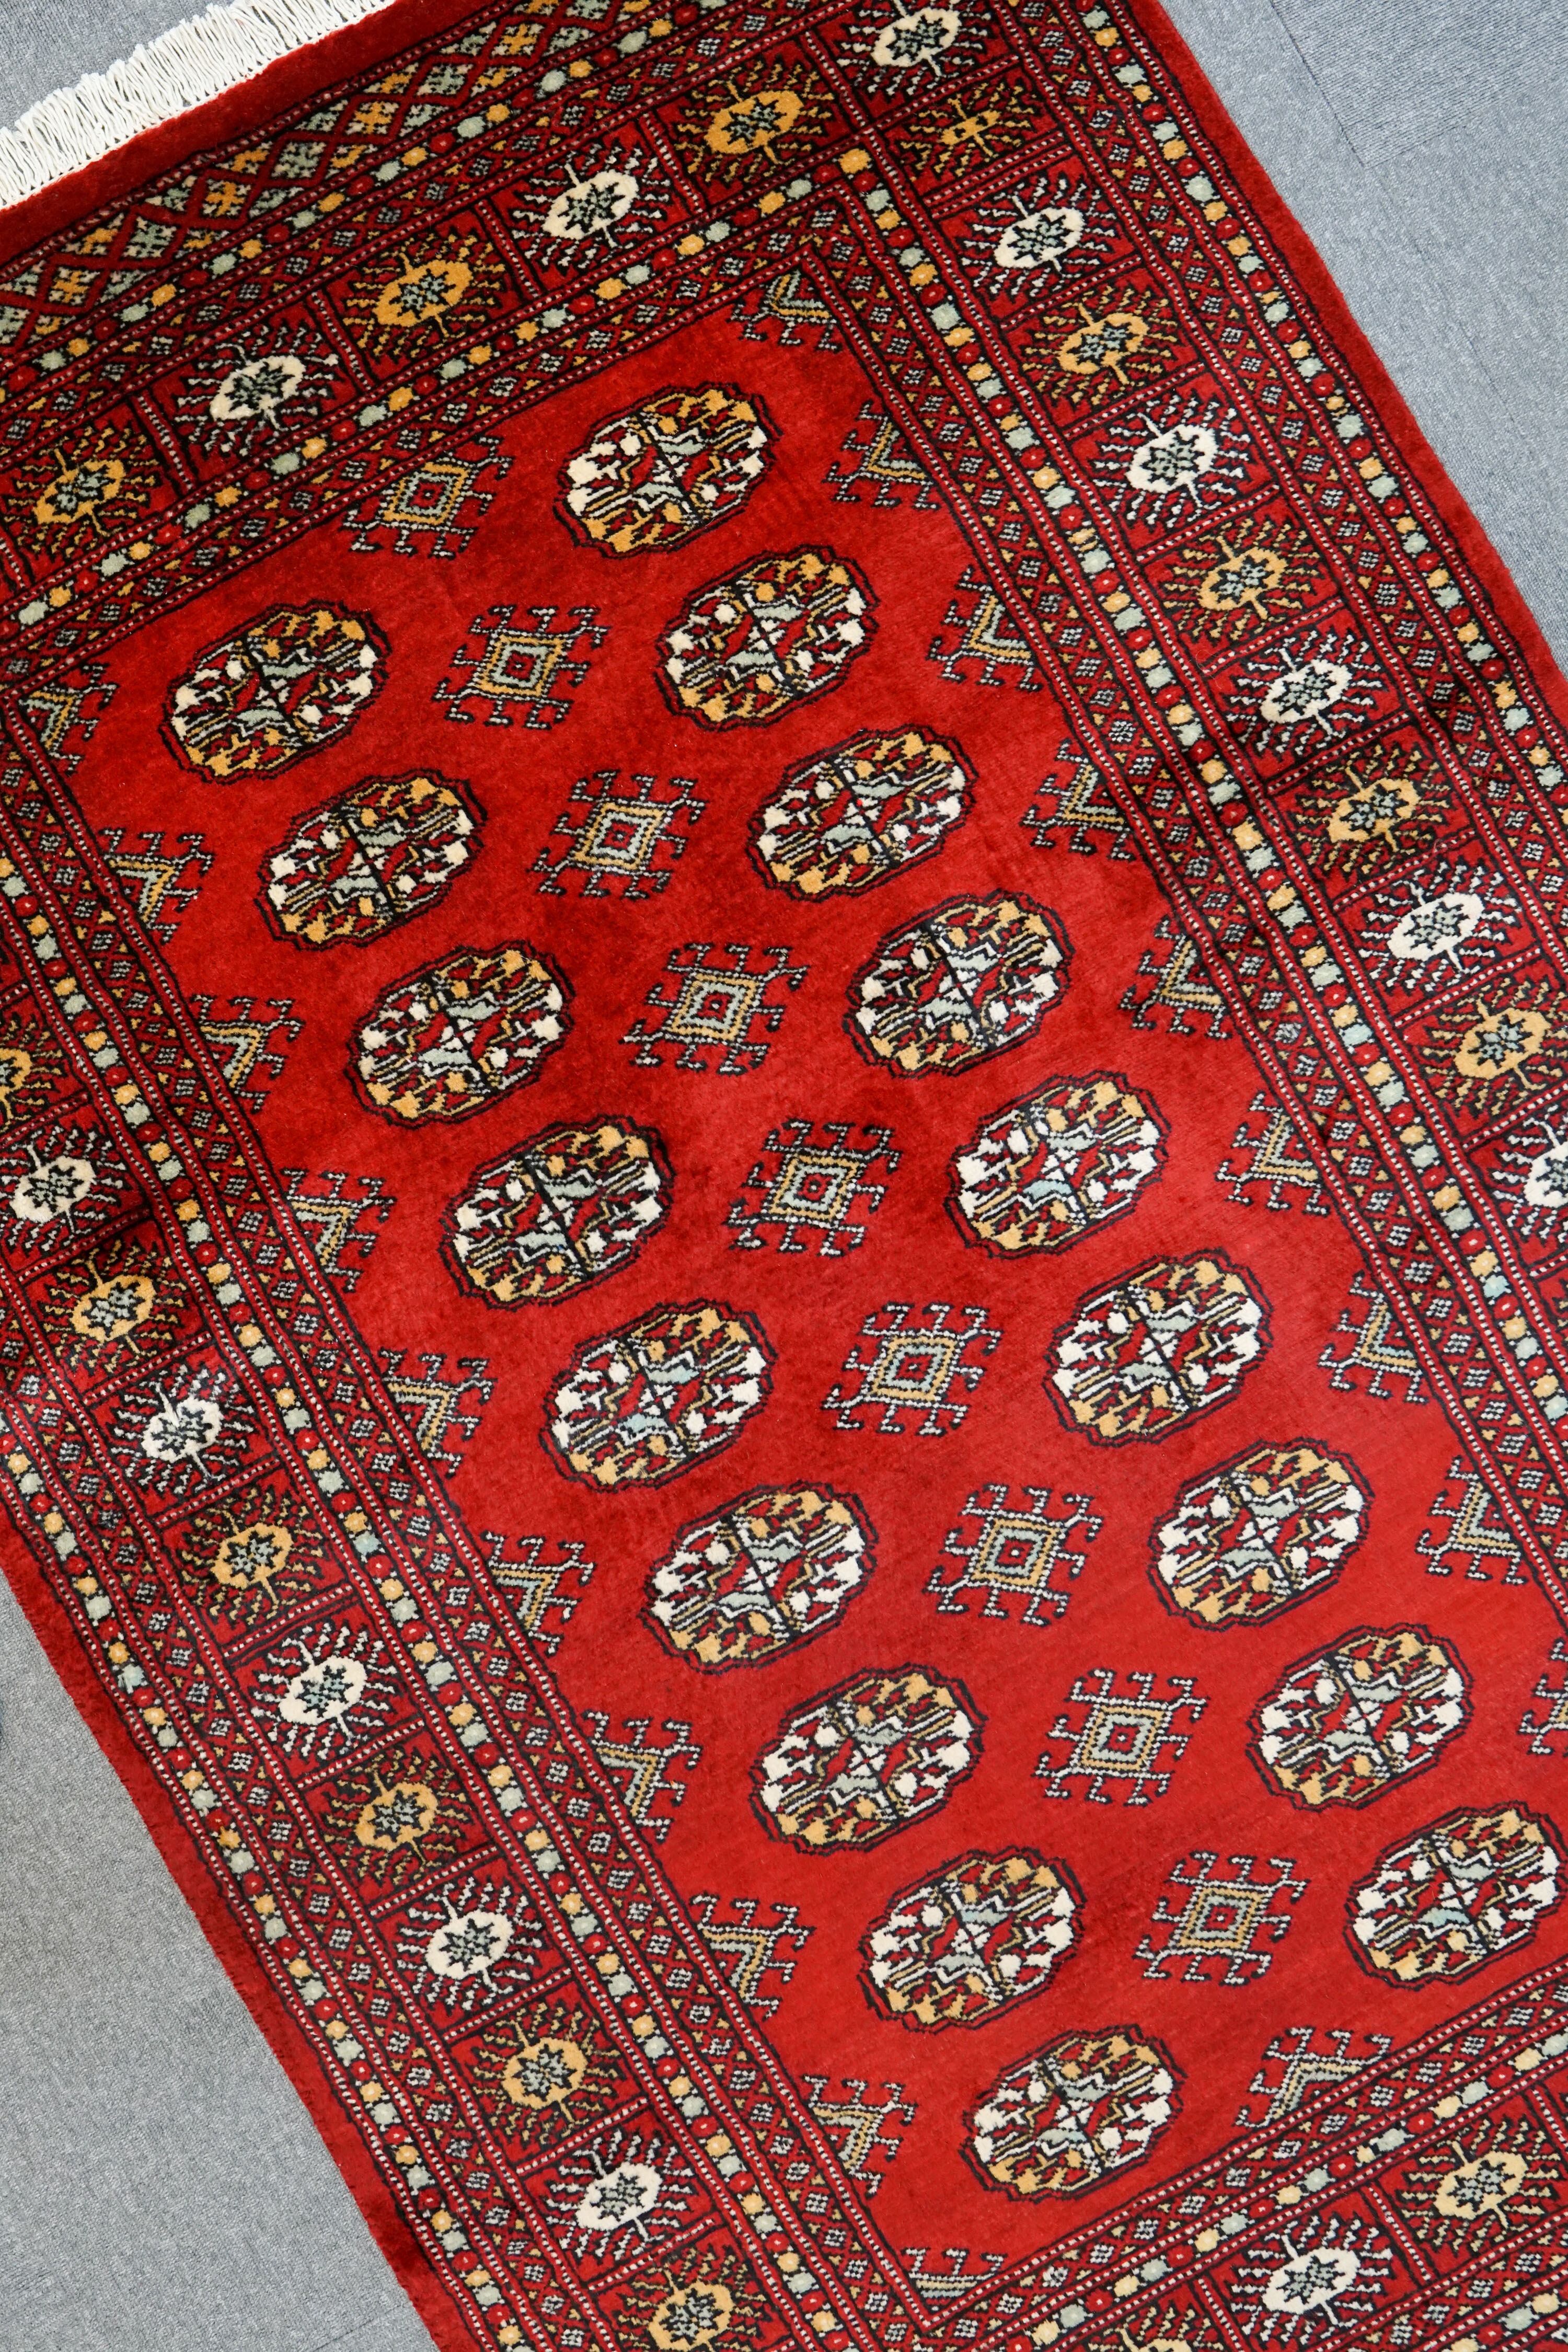 188×124cm【パキスタン手織り絨毯】 Decorworks